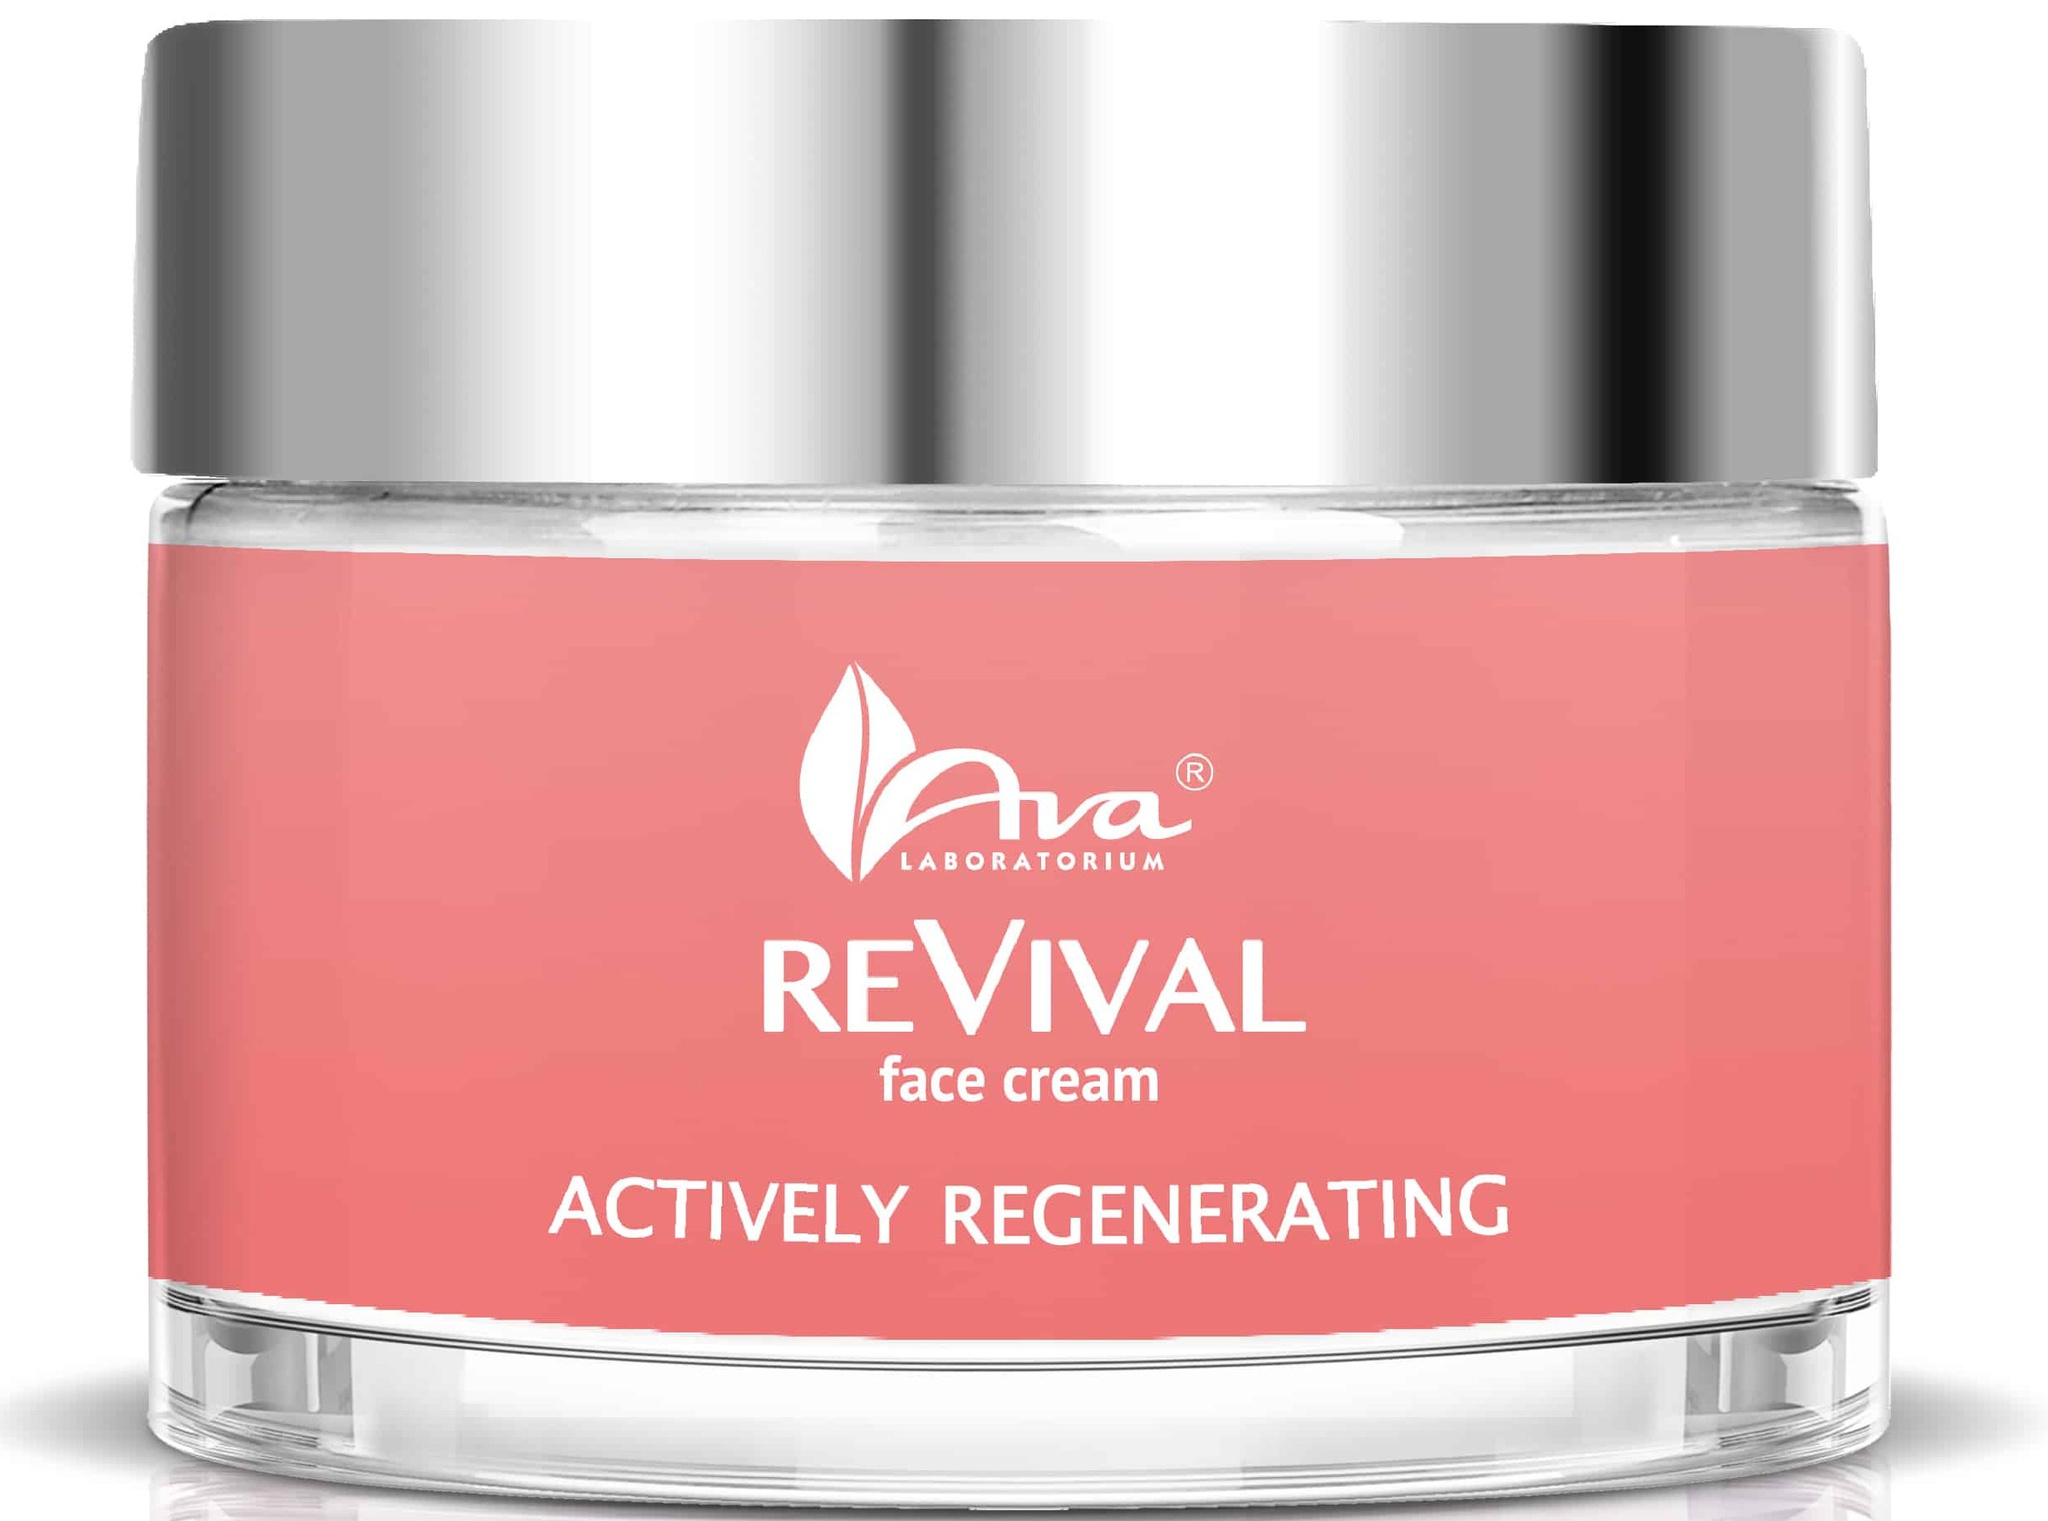 Ava Laboratorium Revival Actively Regenerating Face Cream